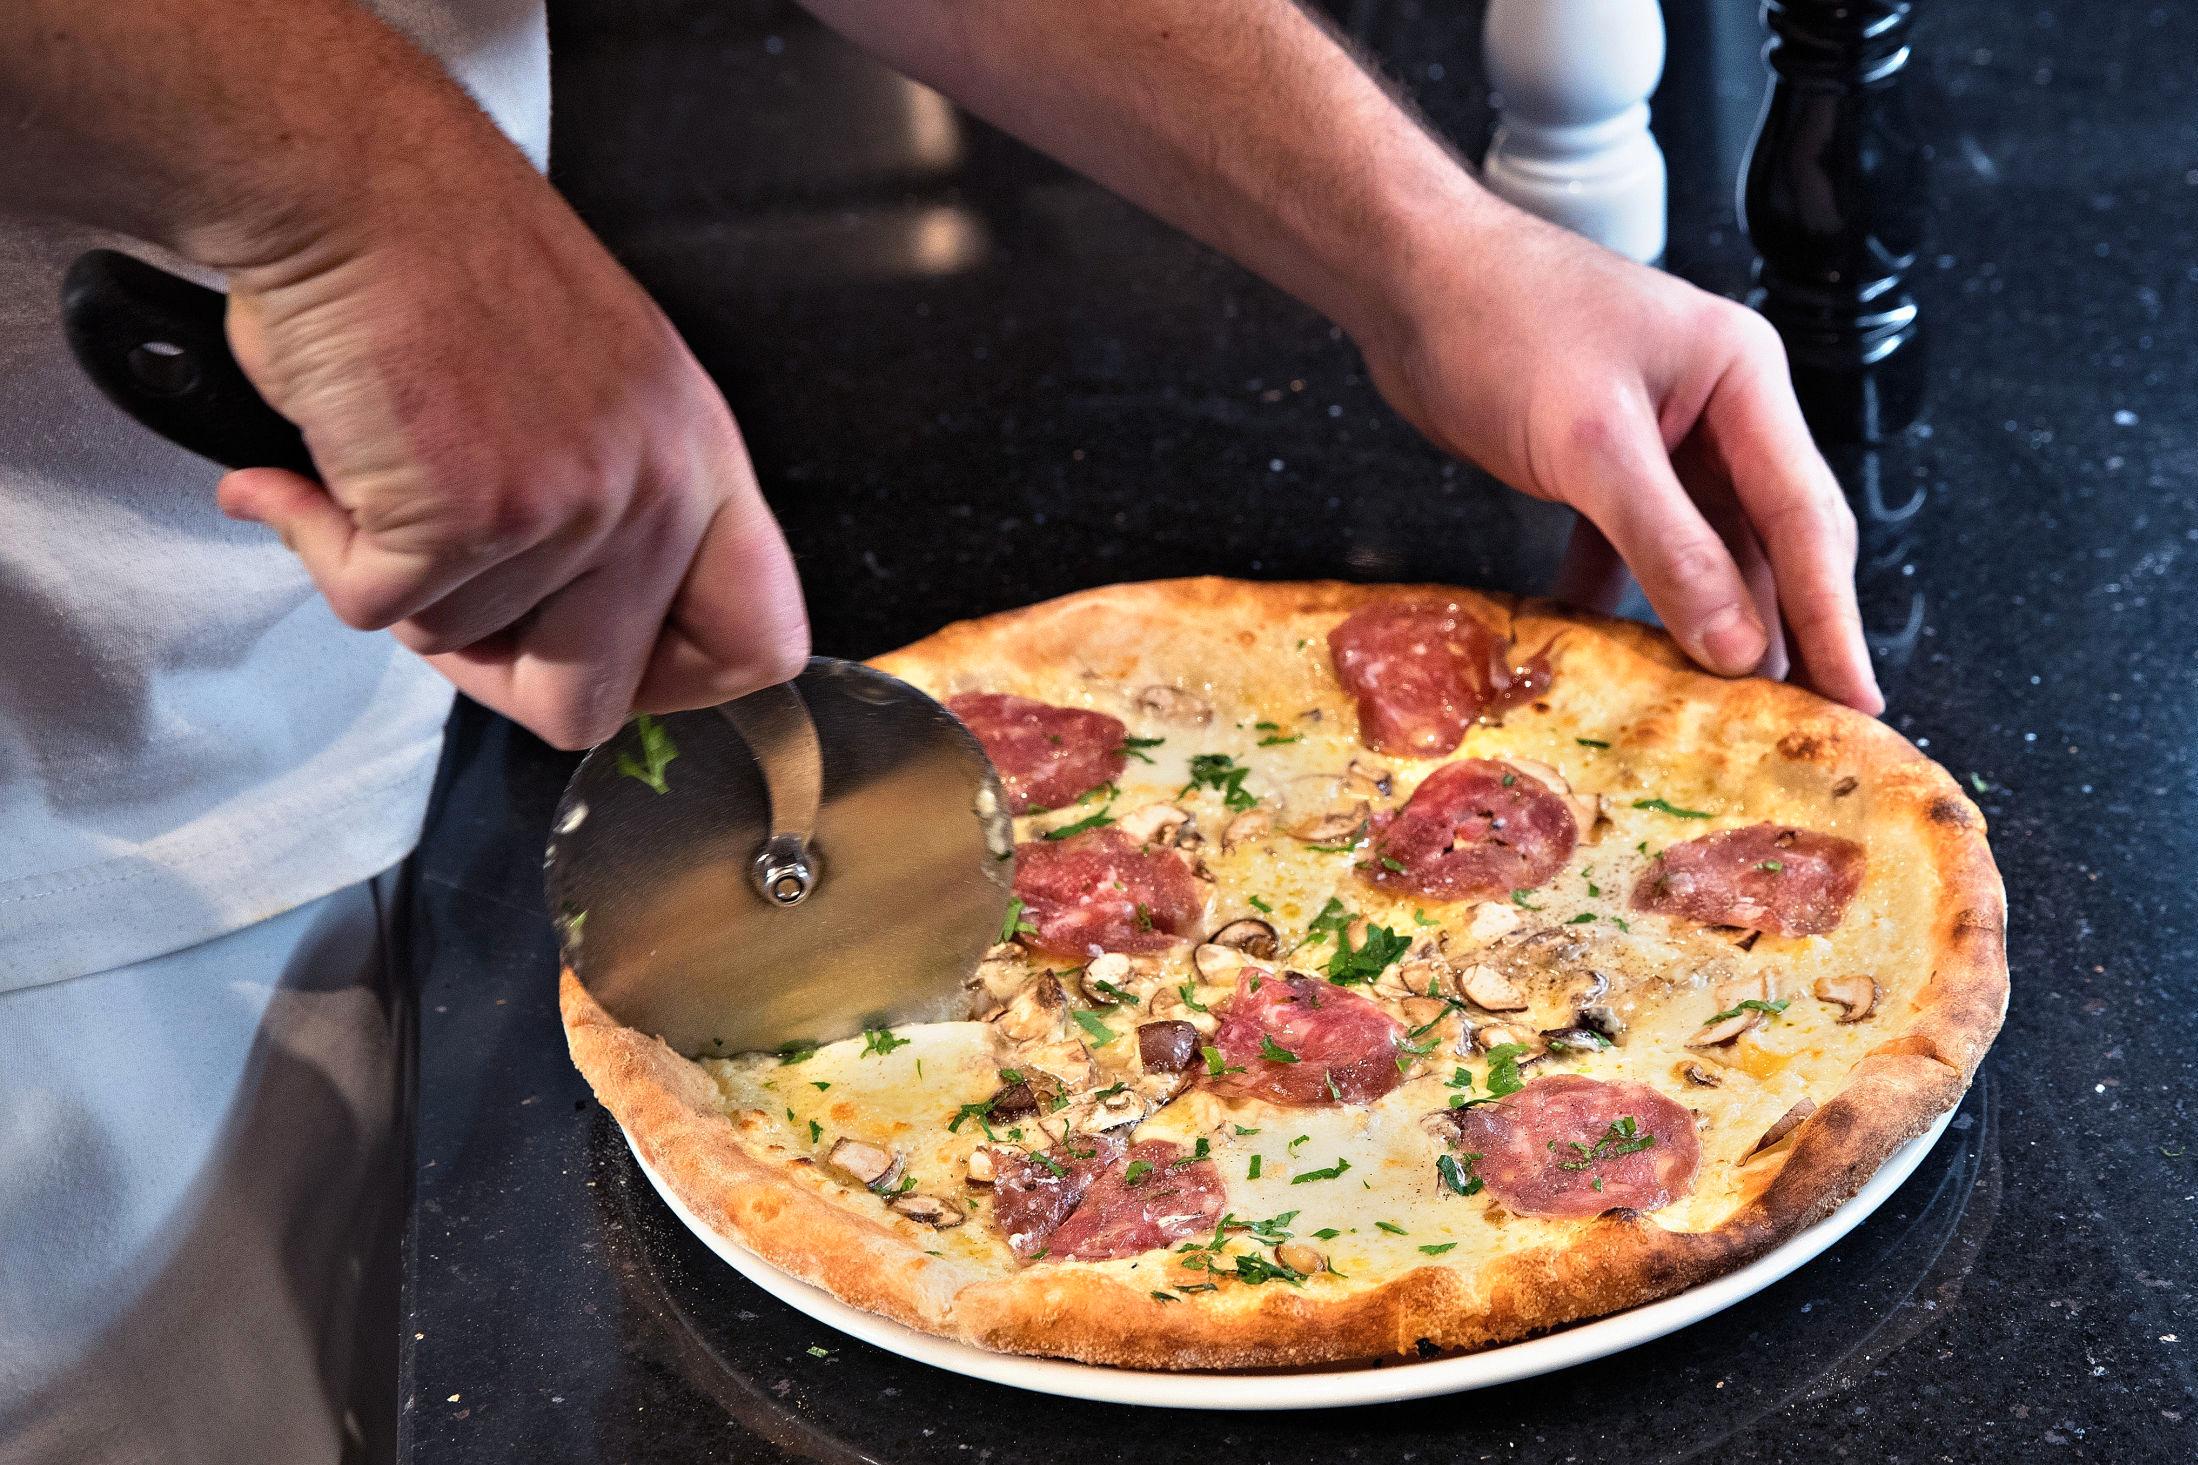 HVIT PIZZA: Lofthus sine pizzaer har inntatt kveldsserveringen på Kunstnernes hus. Her er en trøffel-pizza klar til servering. Foto: Hallgeir Vågenes/VG